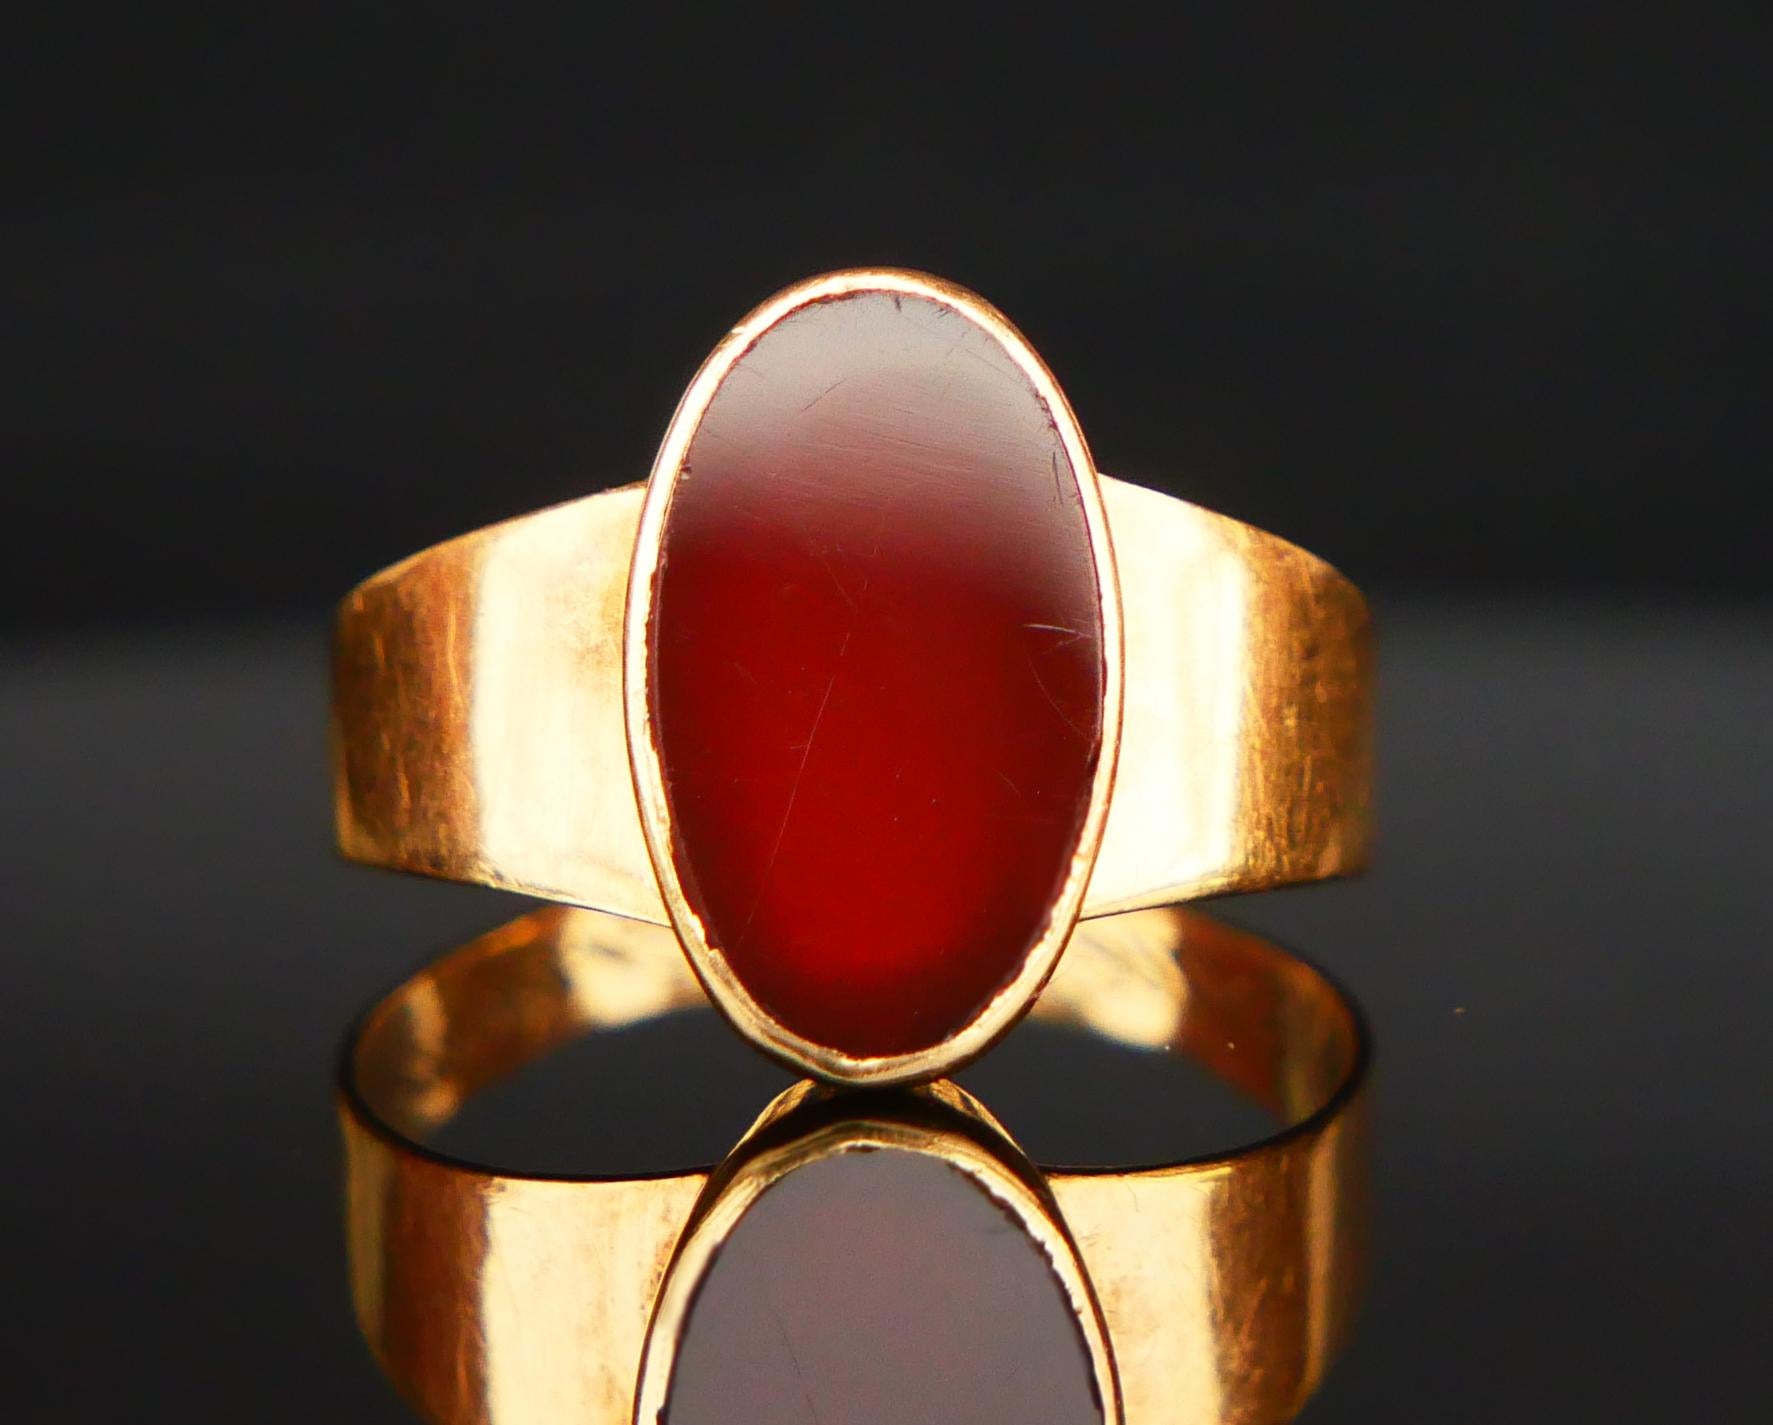 Bague ϟignet pour Homme ou Femme avec anneau large en or jaune massif 18K orné d'une plaque polie sertie d'un Onyx rouge naturel de 12 mm x 7mm x 2.5 mm de profondeur / ca 3.5 ct.

La surface de la pierre est polie à plat, la face arrière est